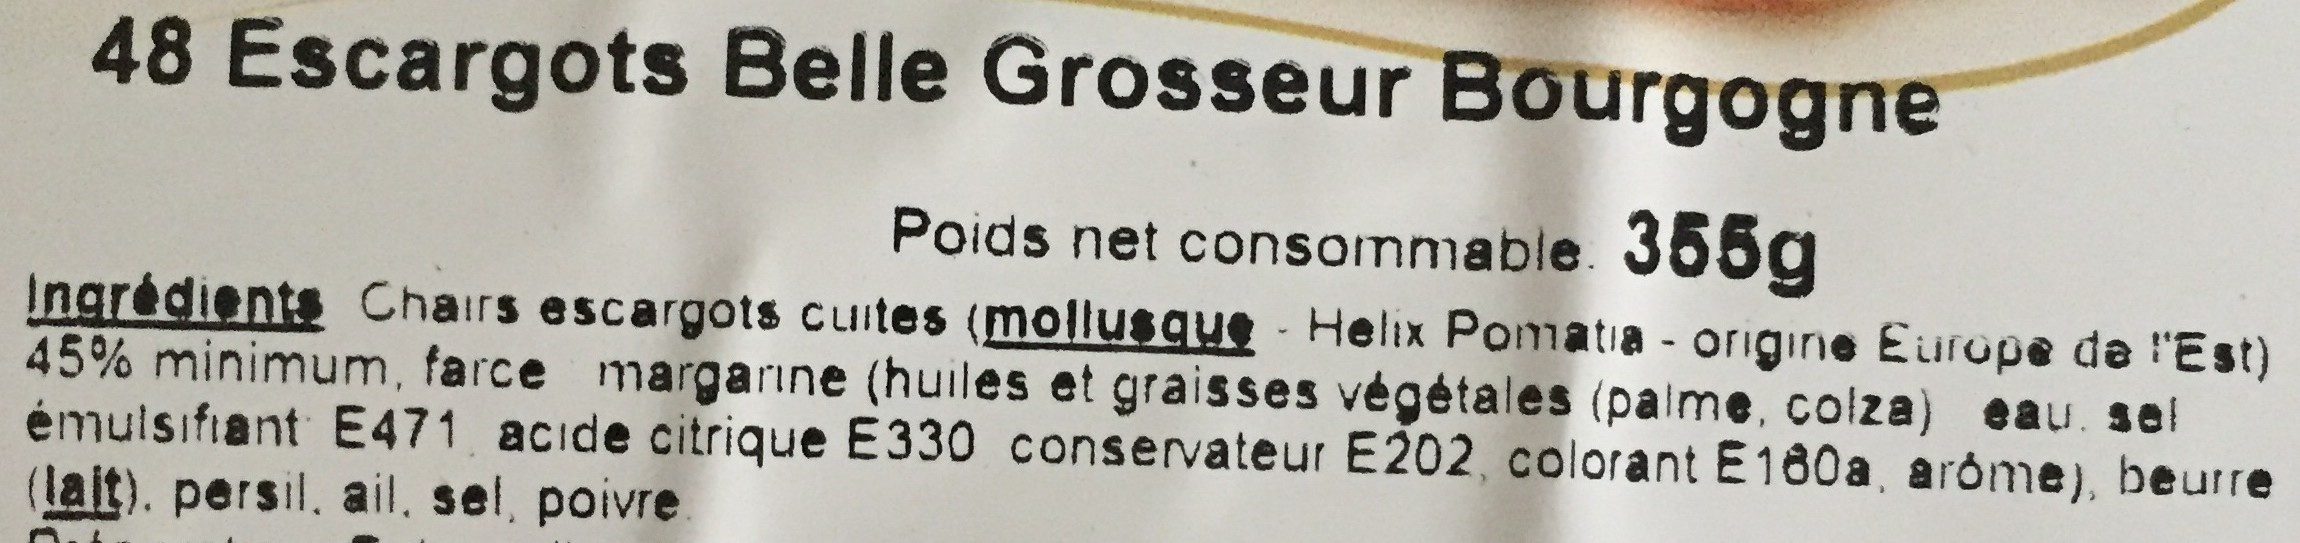 Escargot belle grosseur bourgogne - Ingredienser - fr